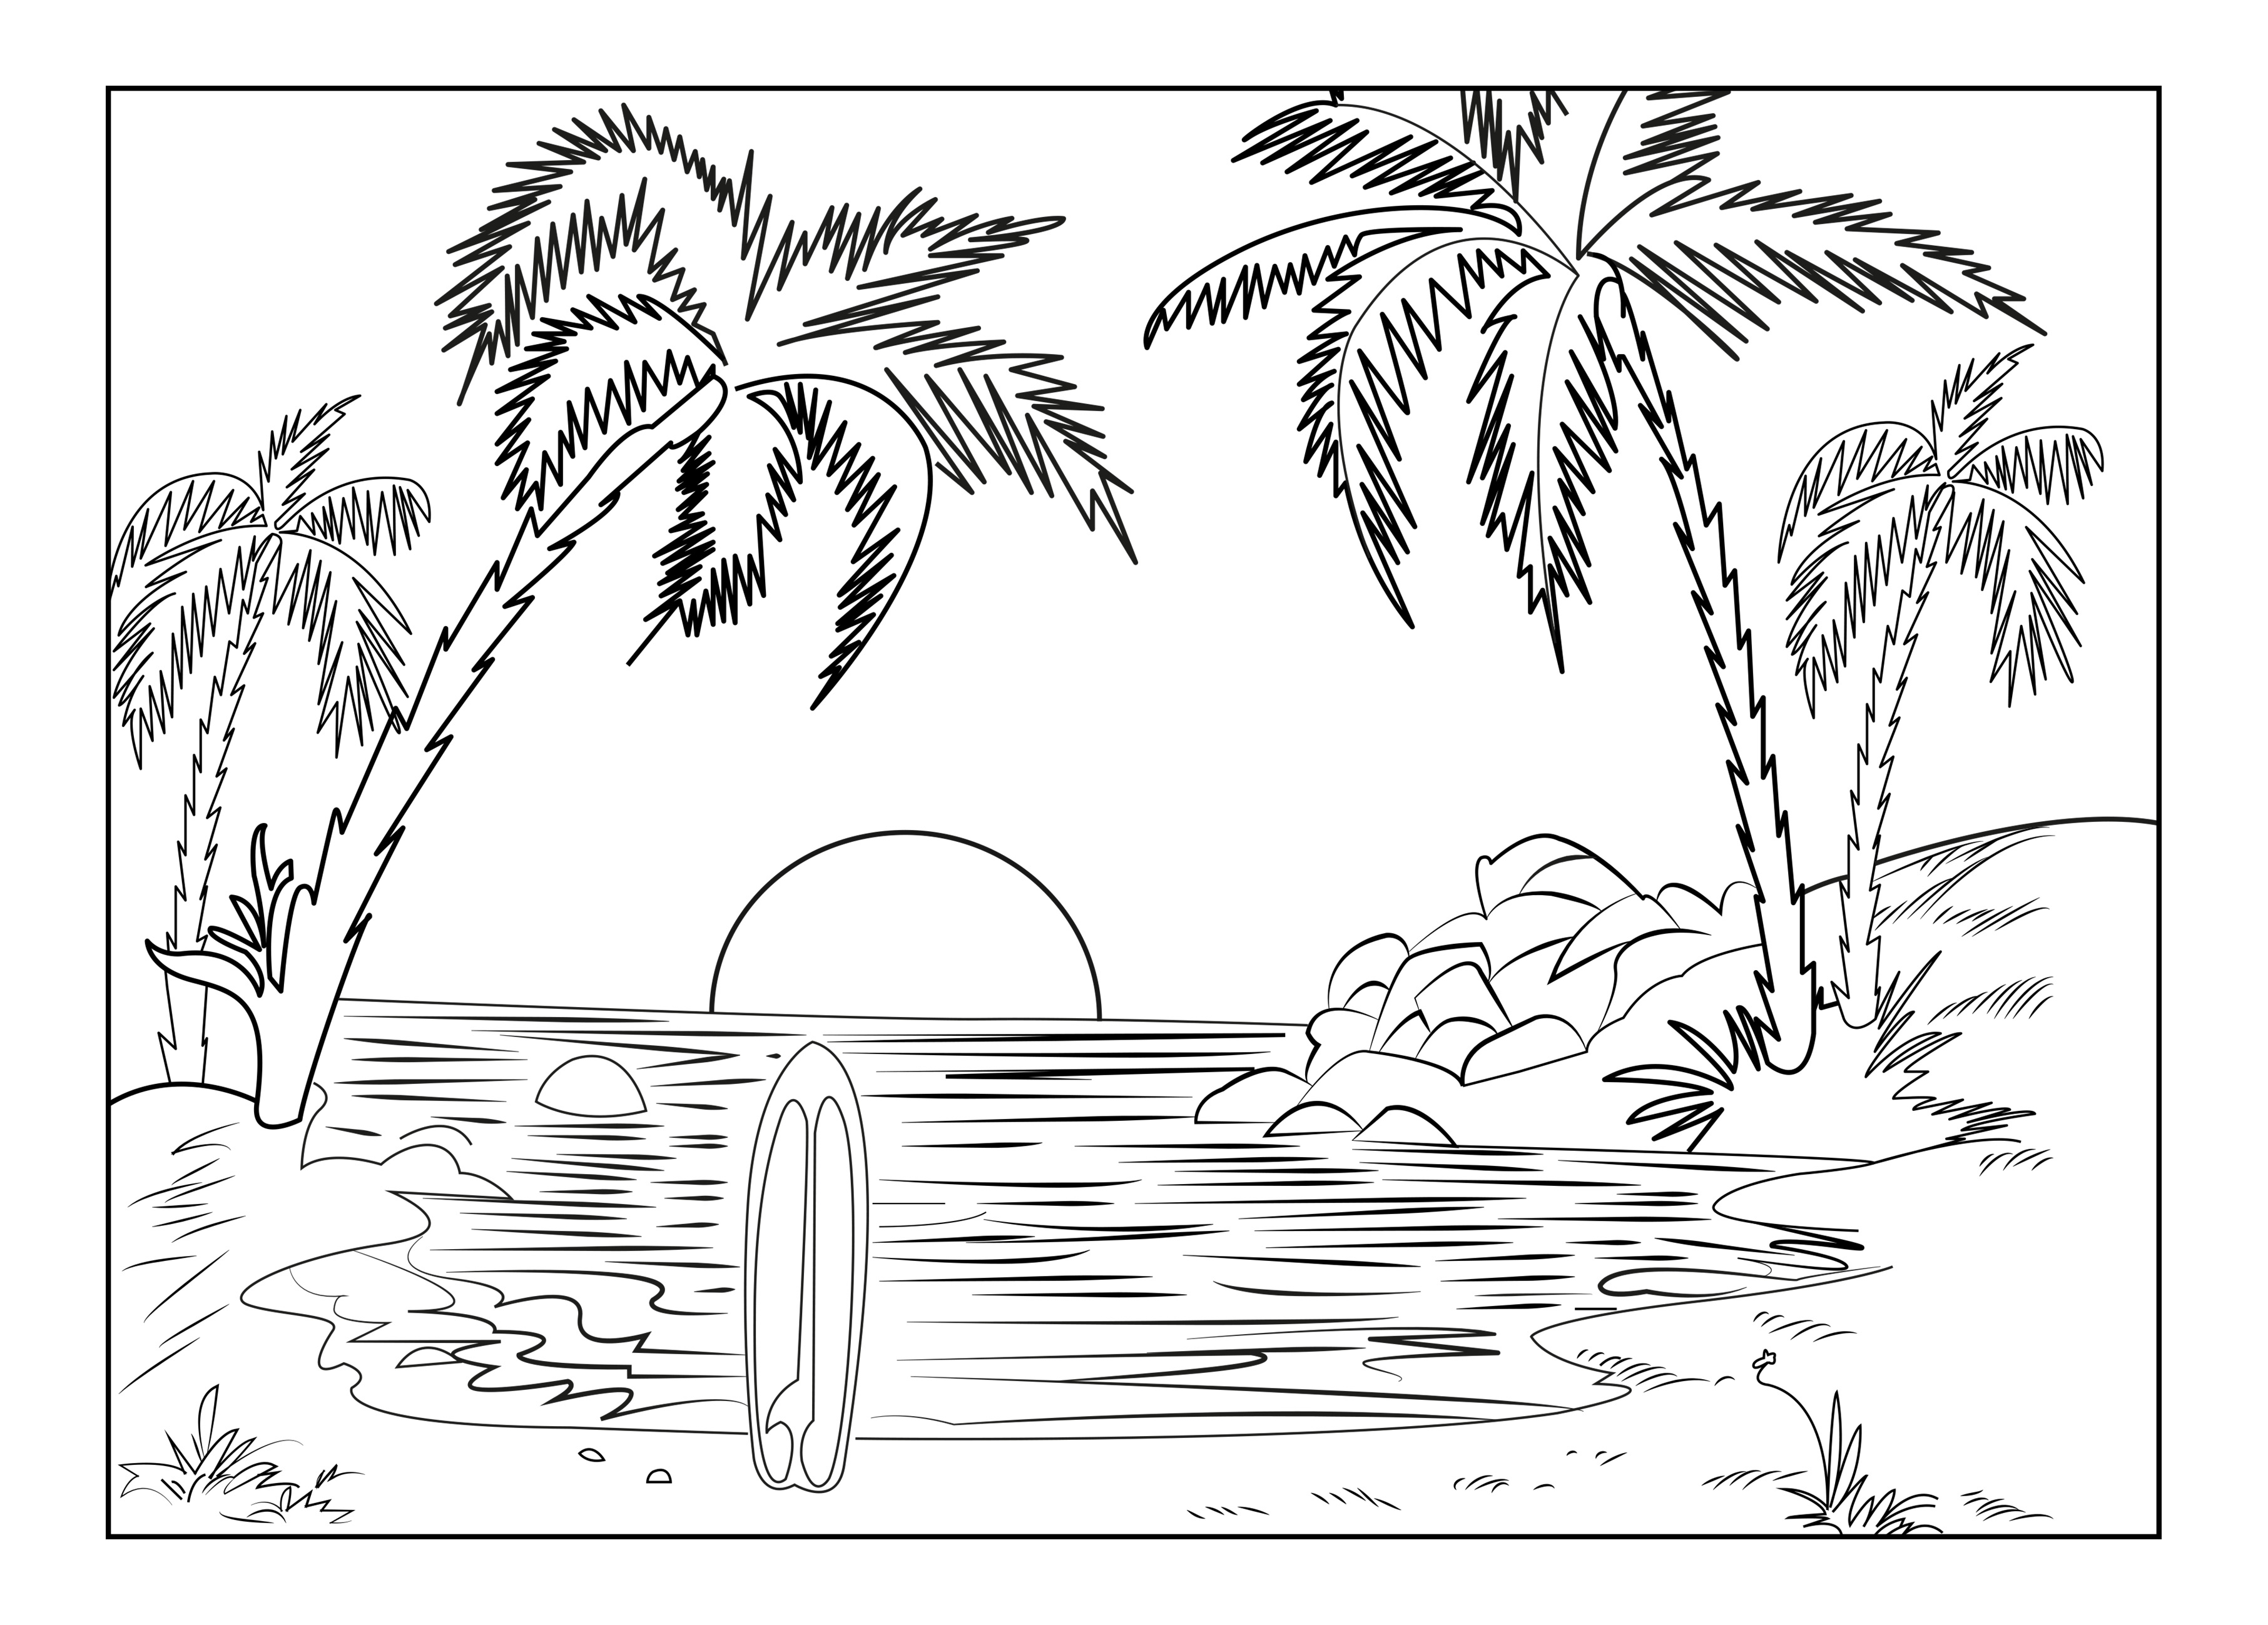 Der Strand einer Paradiesinsel, mit Palmen, einem Surfbrett und der untergehenden Sonne